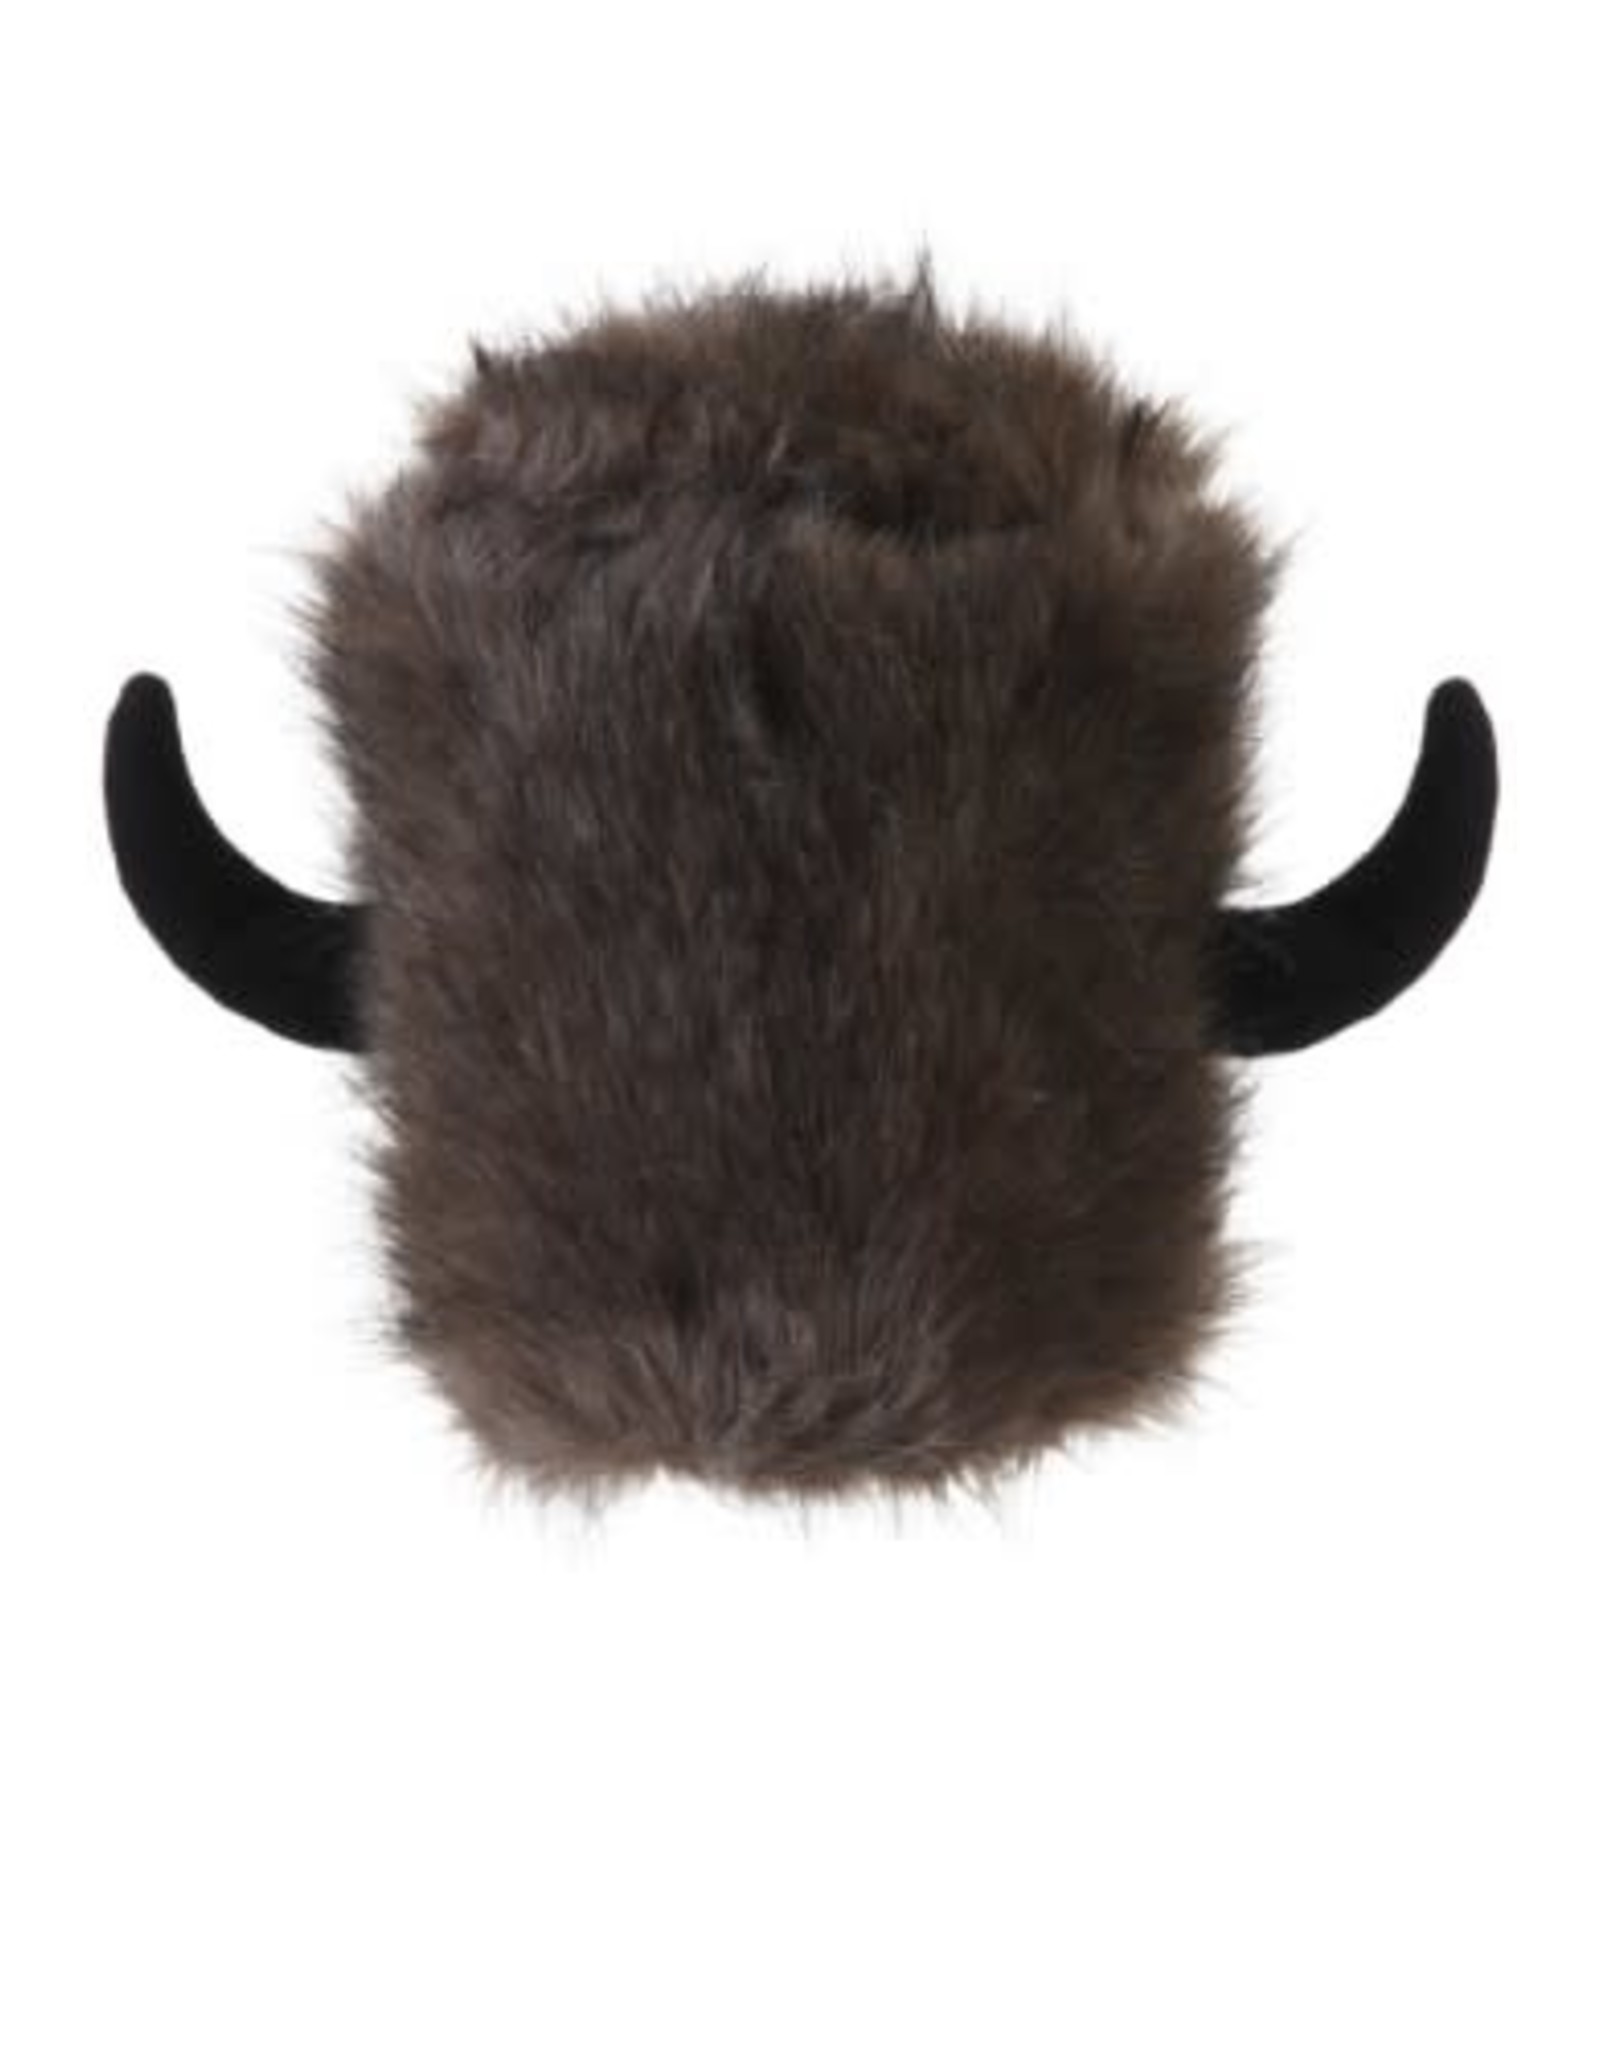 Jacobson Hat Co. Water Buffalo Hat, Fur